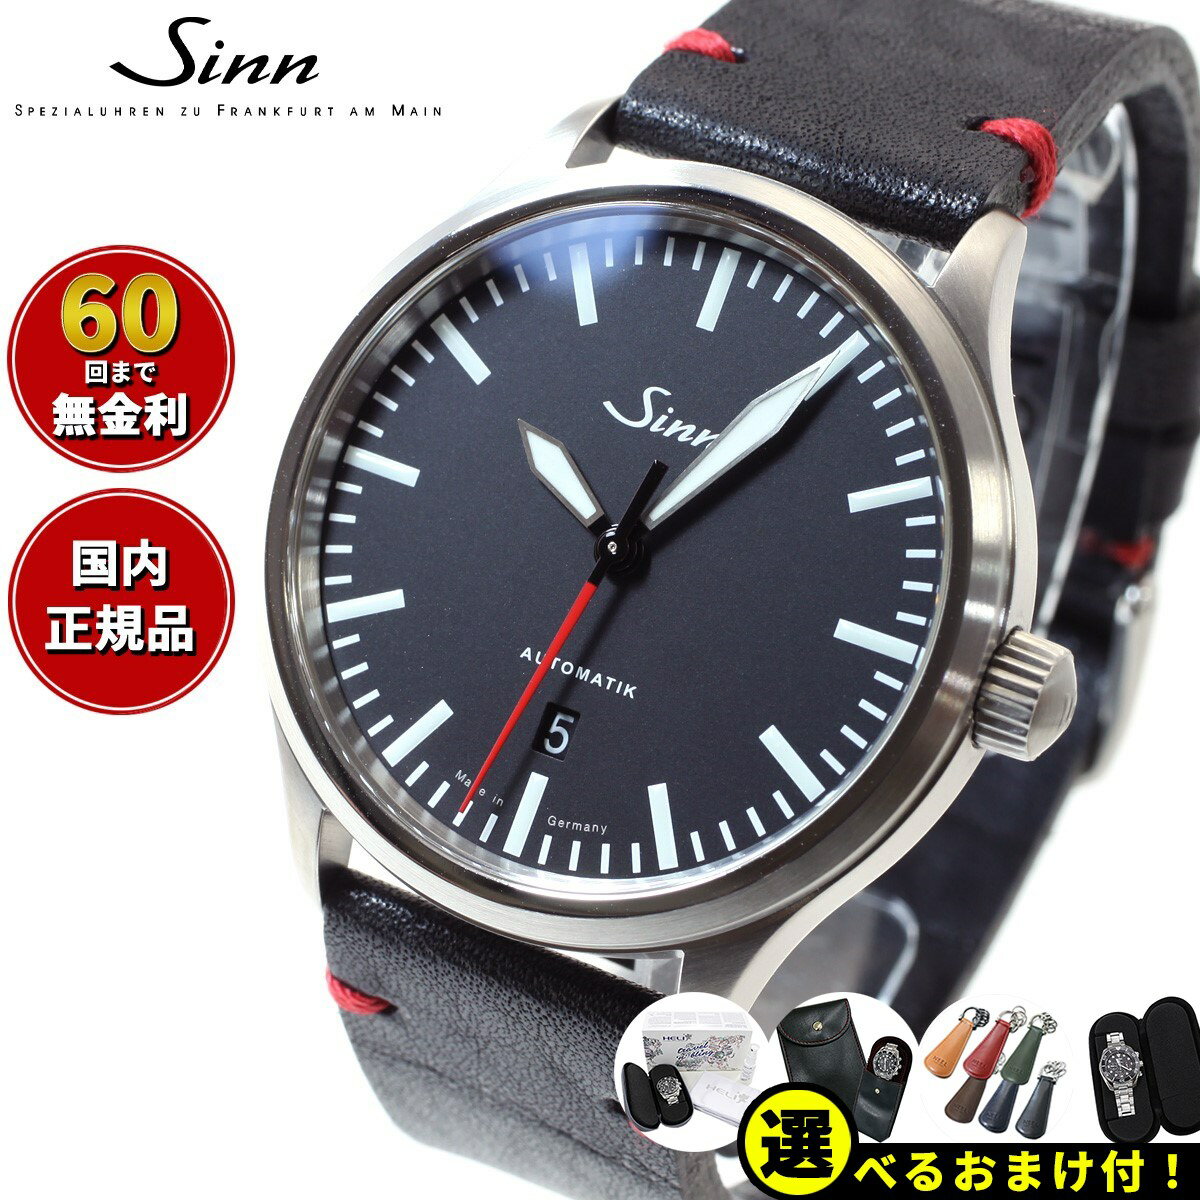 ジン 【選べるノベルティー付き！】【60回分割手数料無料！】Sinn ジン 836 自動巻き 腕時計 メンズ Instrument Watches インストゥルメント ウォッチ カウレザーストラップ ドイツ製